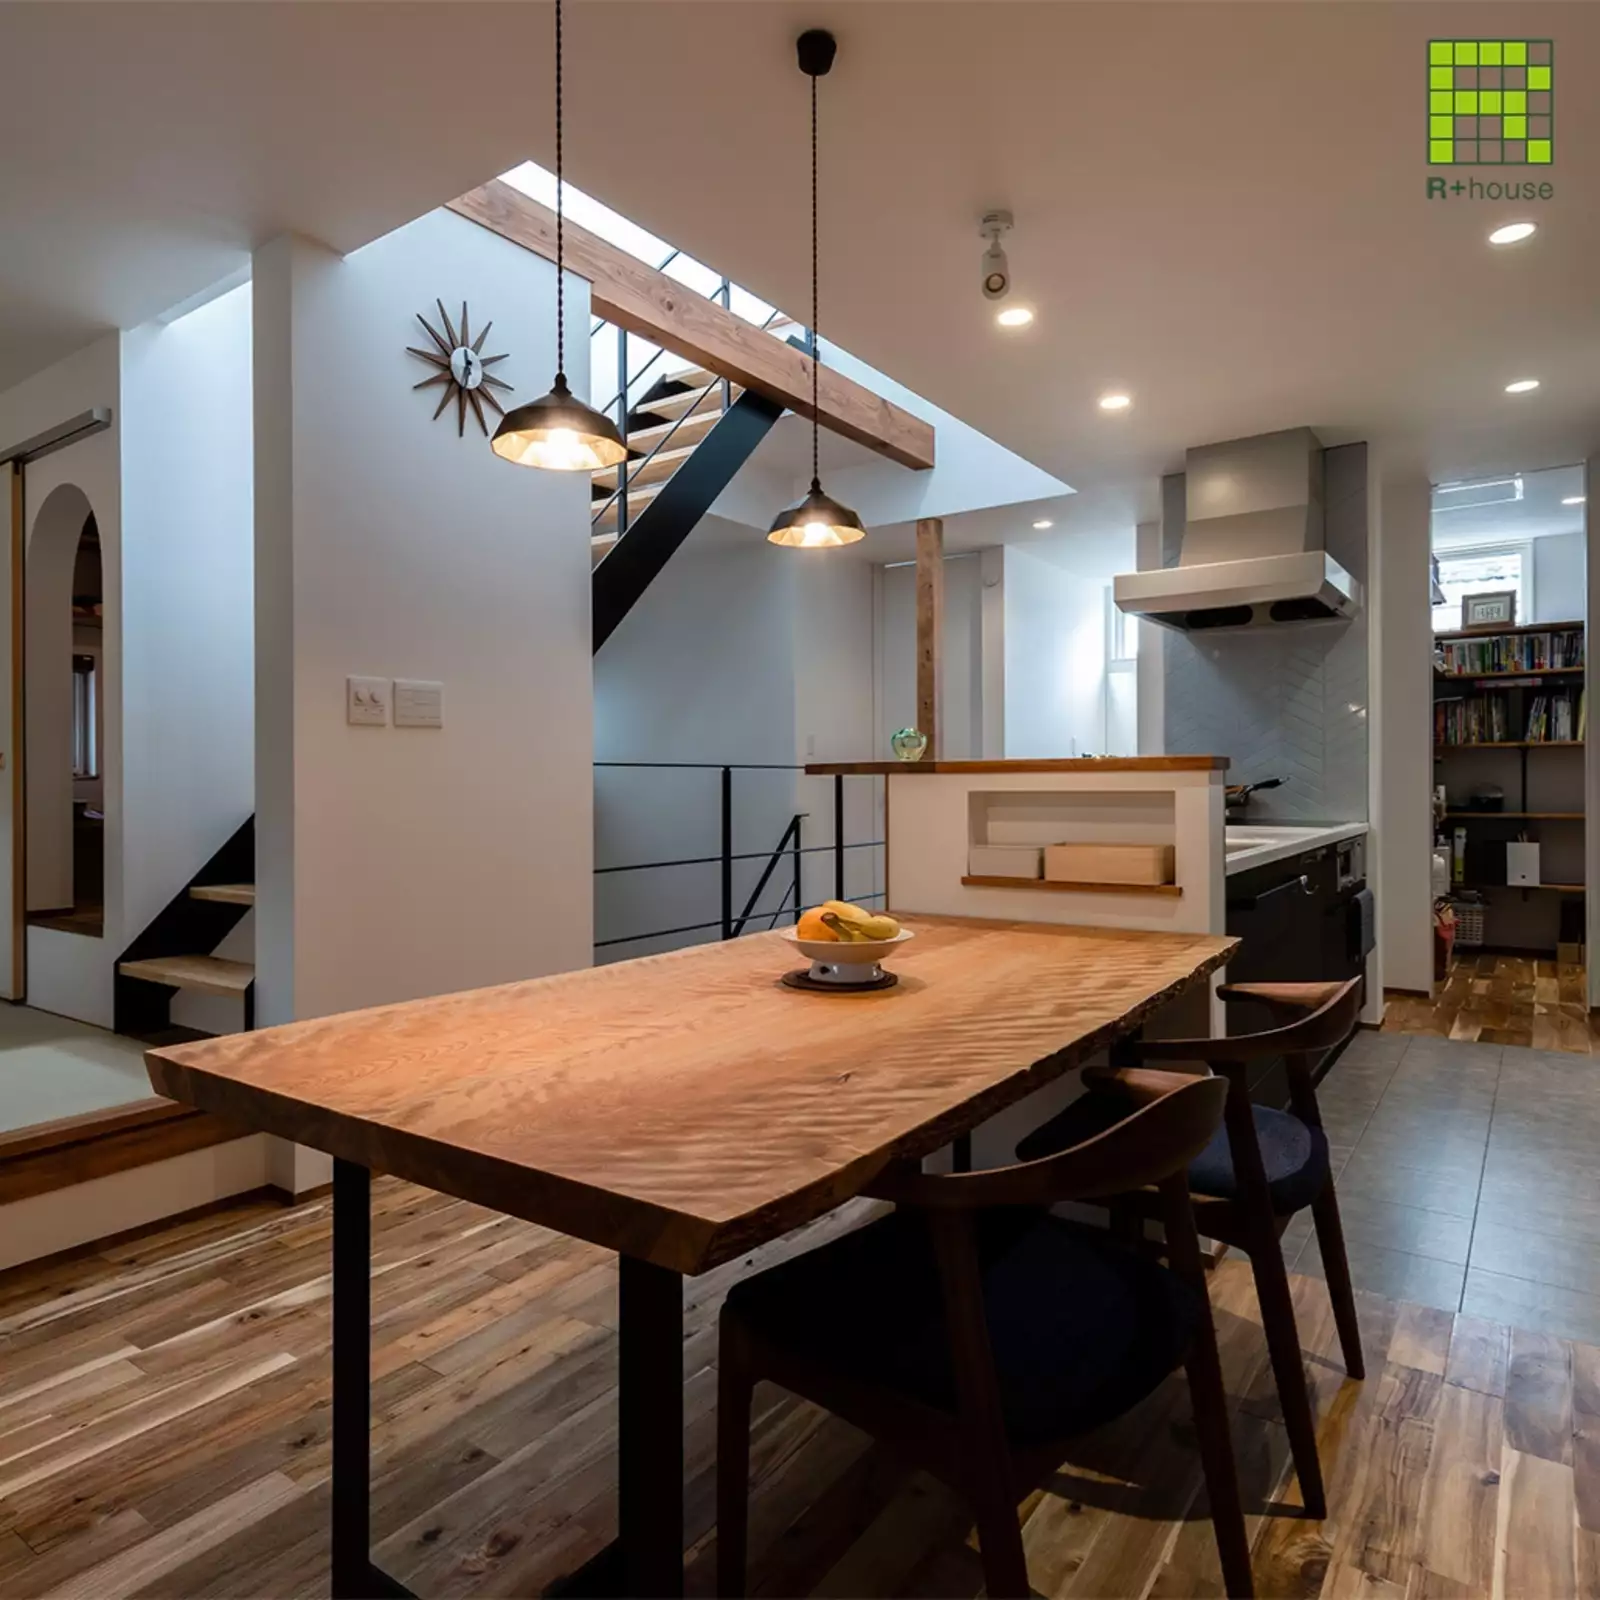 R+houseの物件のダイニングキッチンの写真です。奥には約2畳の書斎、手前にキッチンとダイニングテーブル。キッチンの前には階段が。